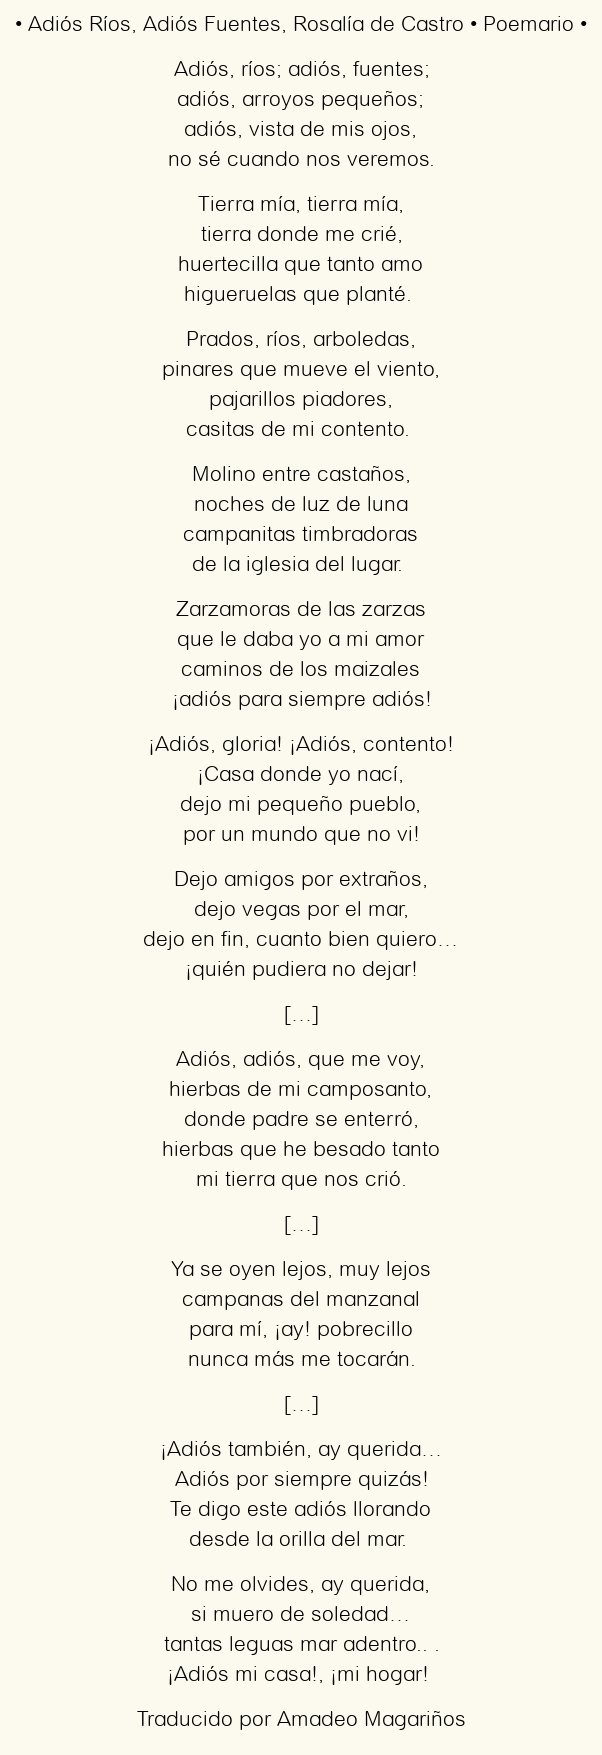 Imagen con el poema Adiós Ríos, Adiós Fuentes, por Rosalía de Castro